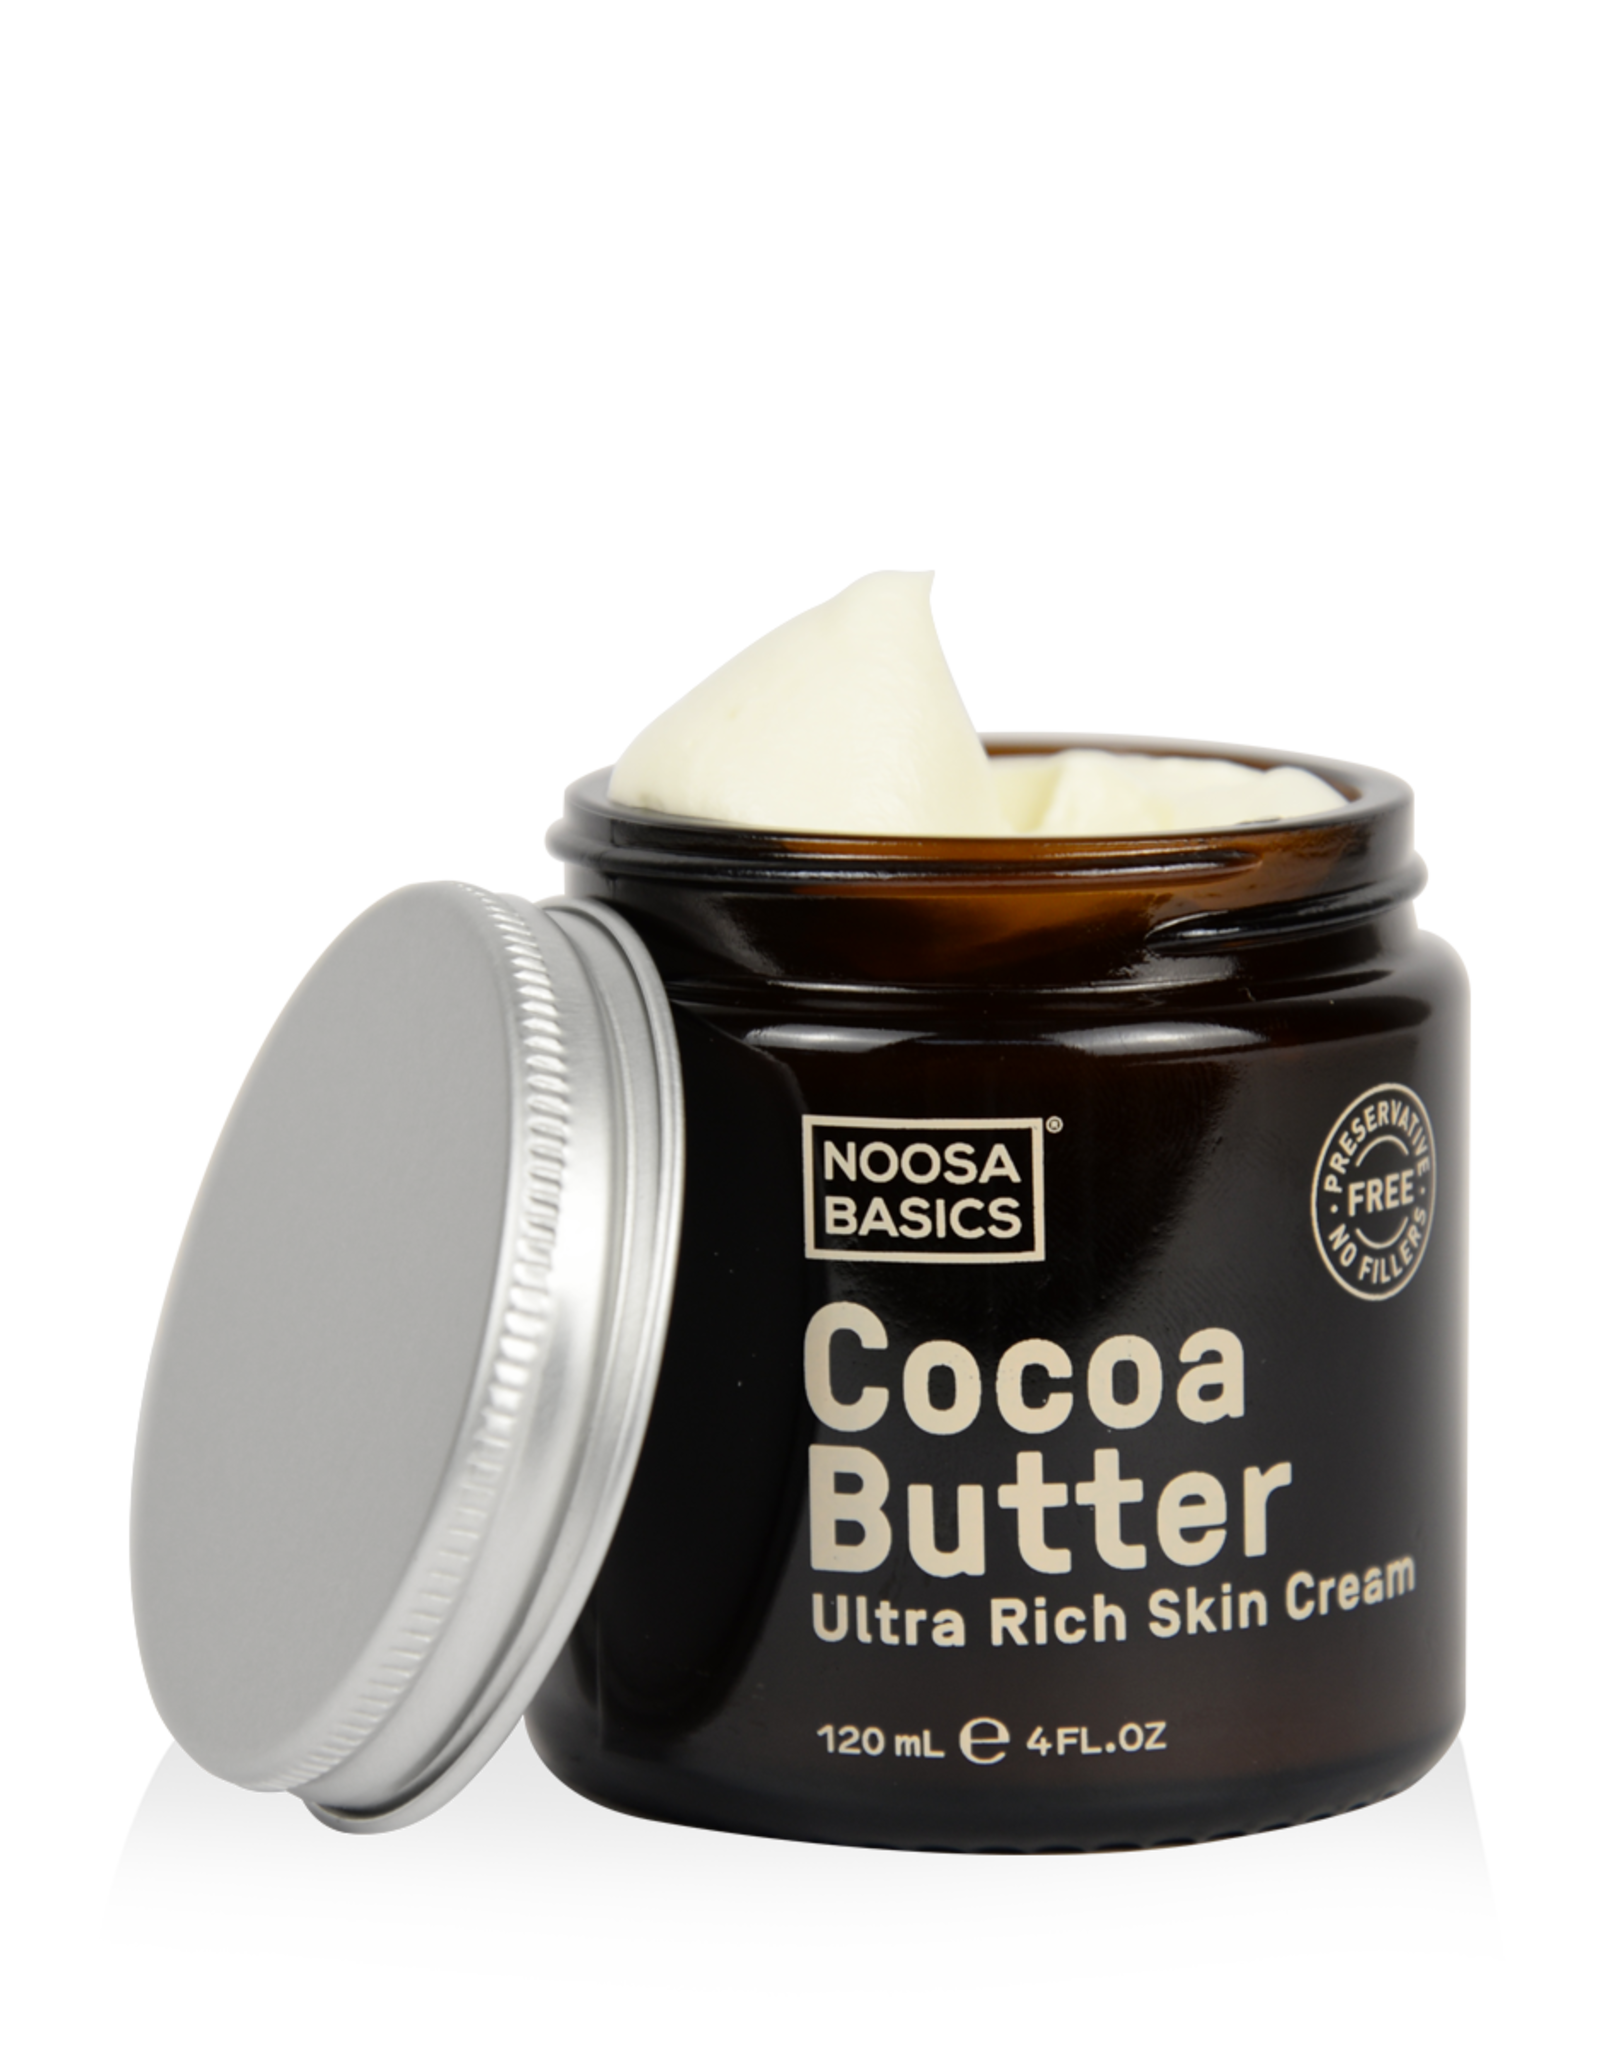 Noosa Basics Ultra Rich Skin Cream - Cocoa Butter - 120ml